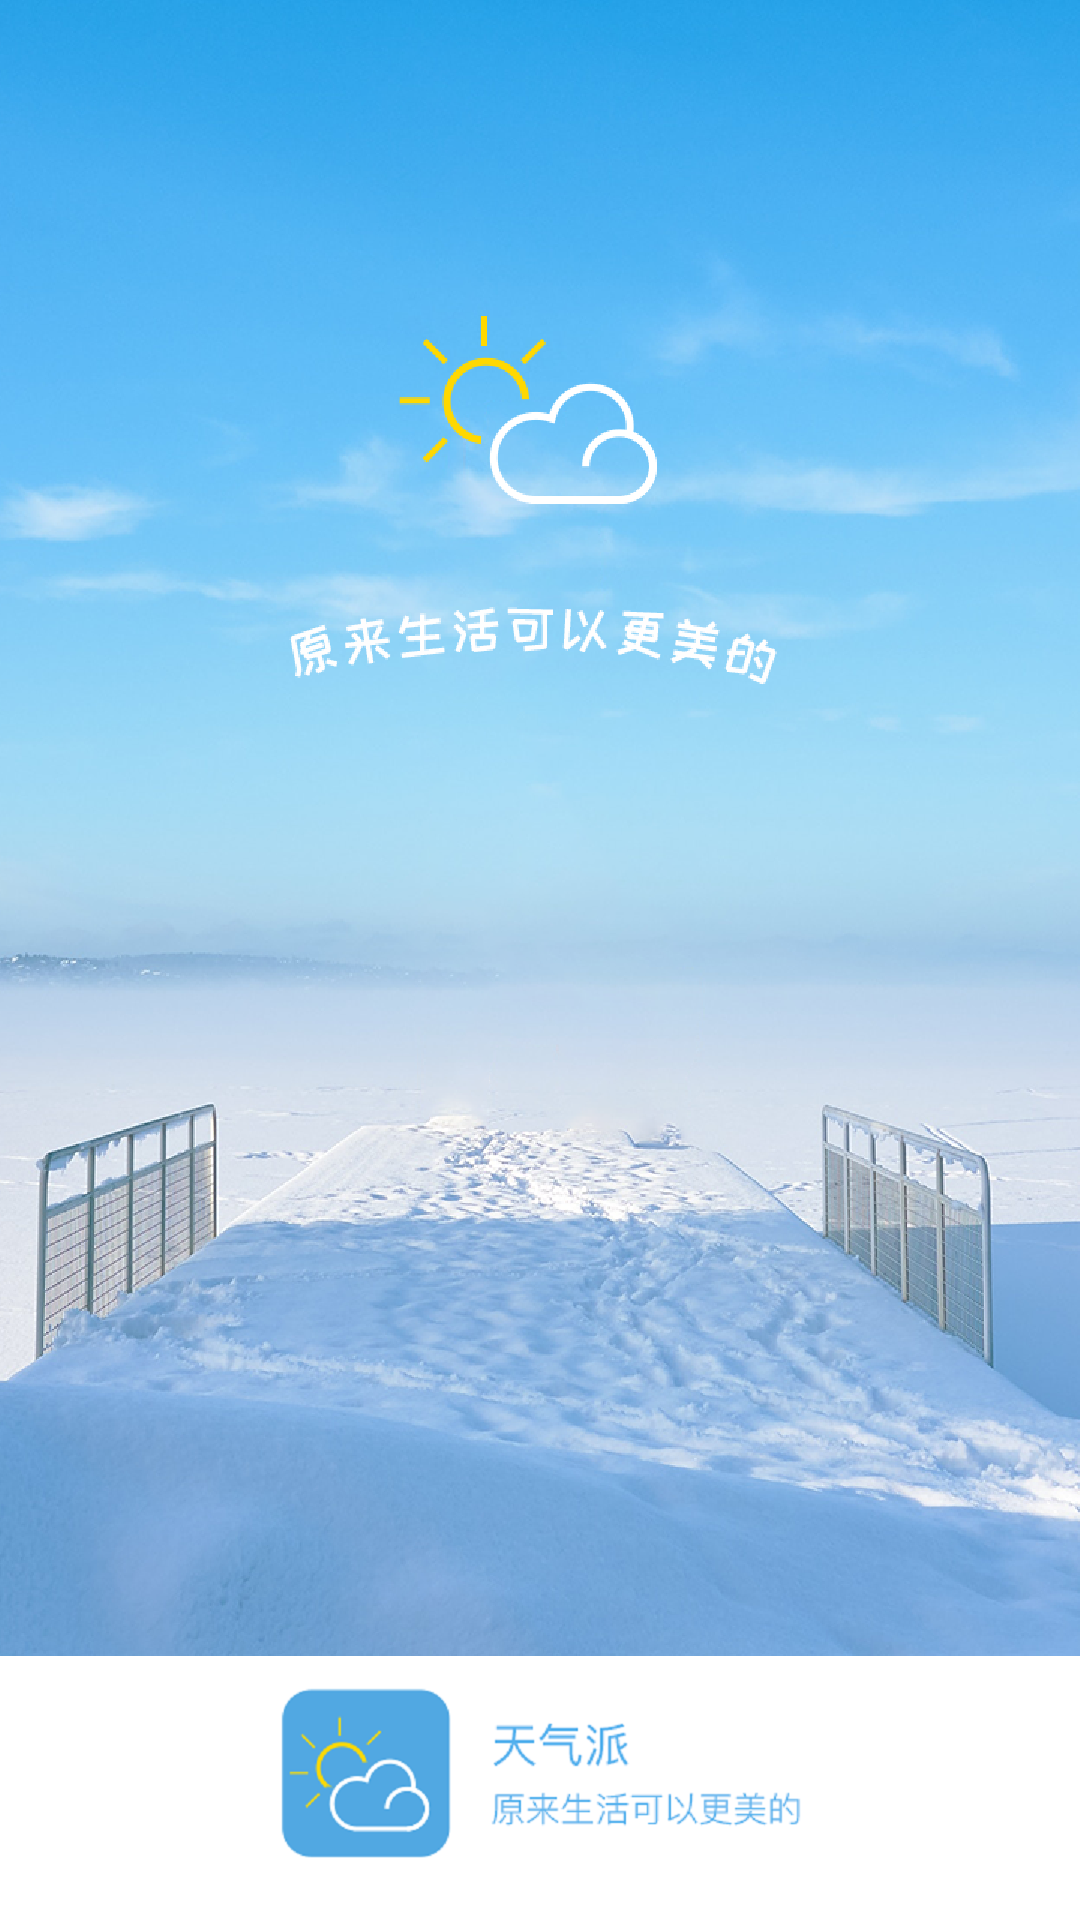 (Tianqipai Weather)